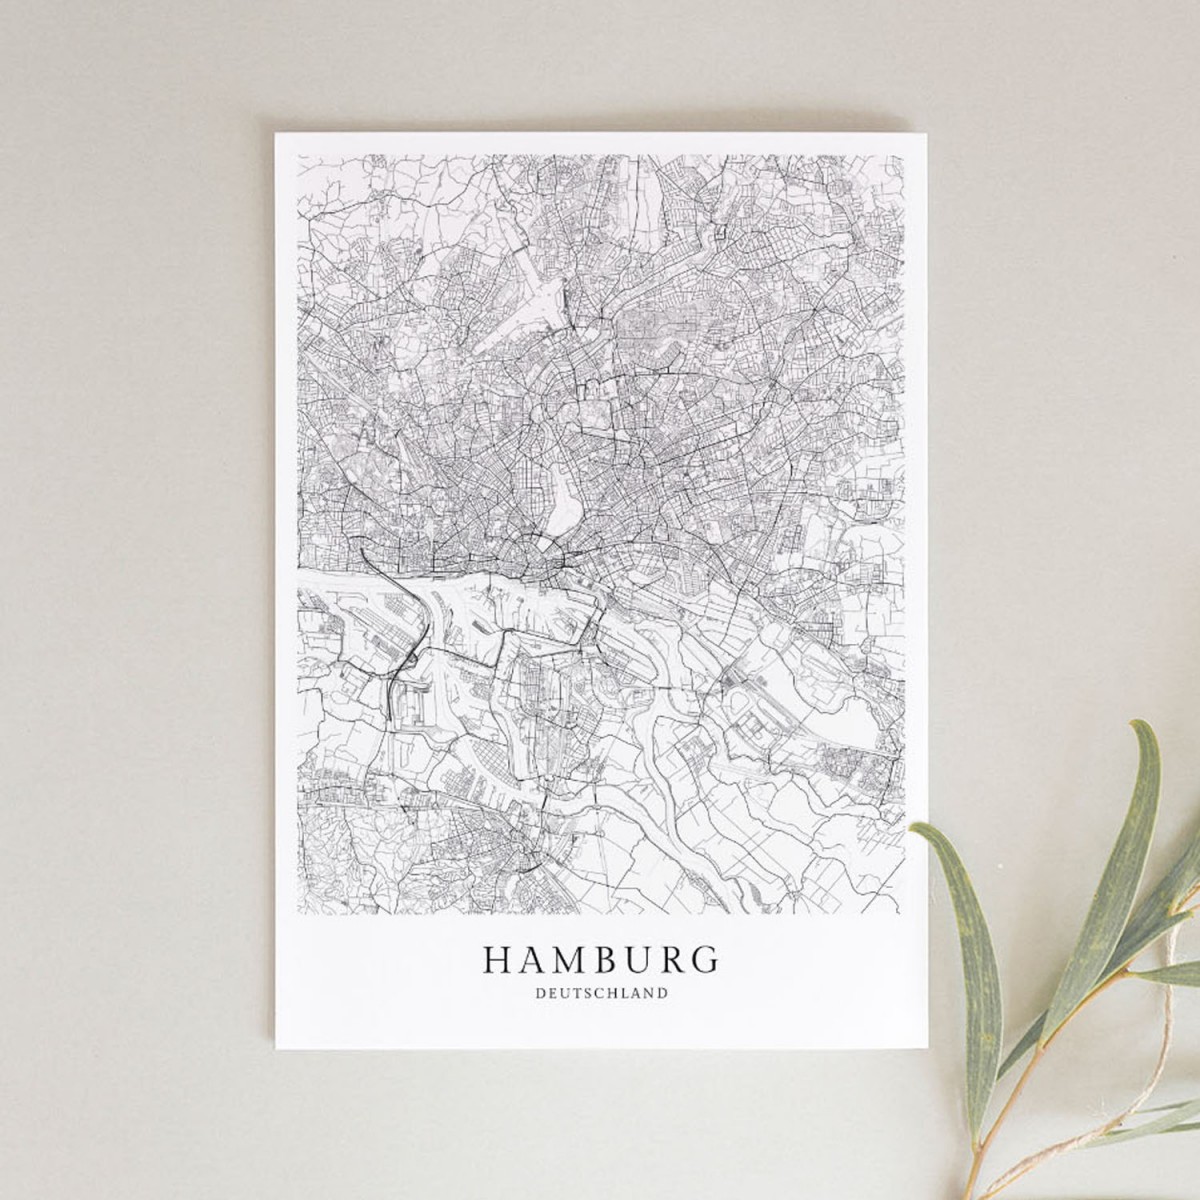 HAMBURG als hochwertiges Poster im skandinavischen Stil von Skanemarie